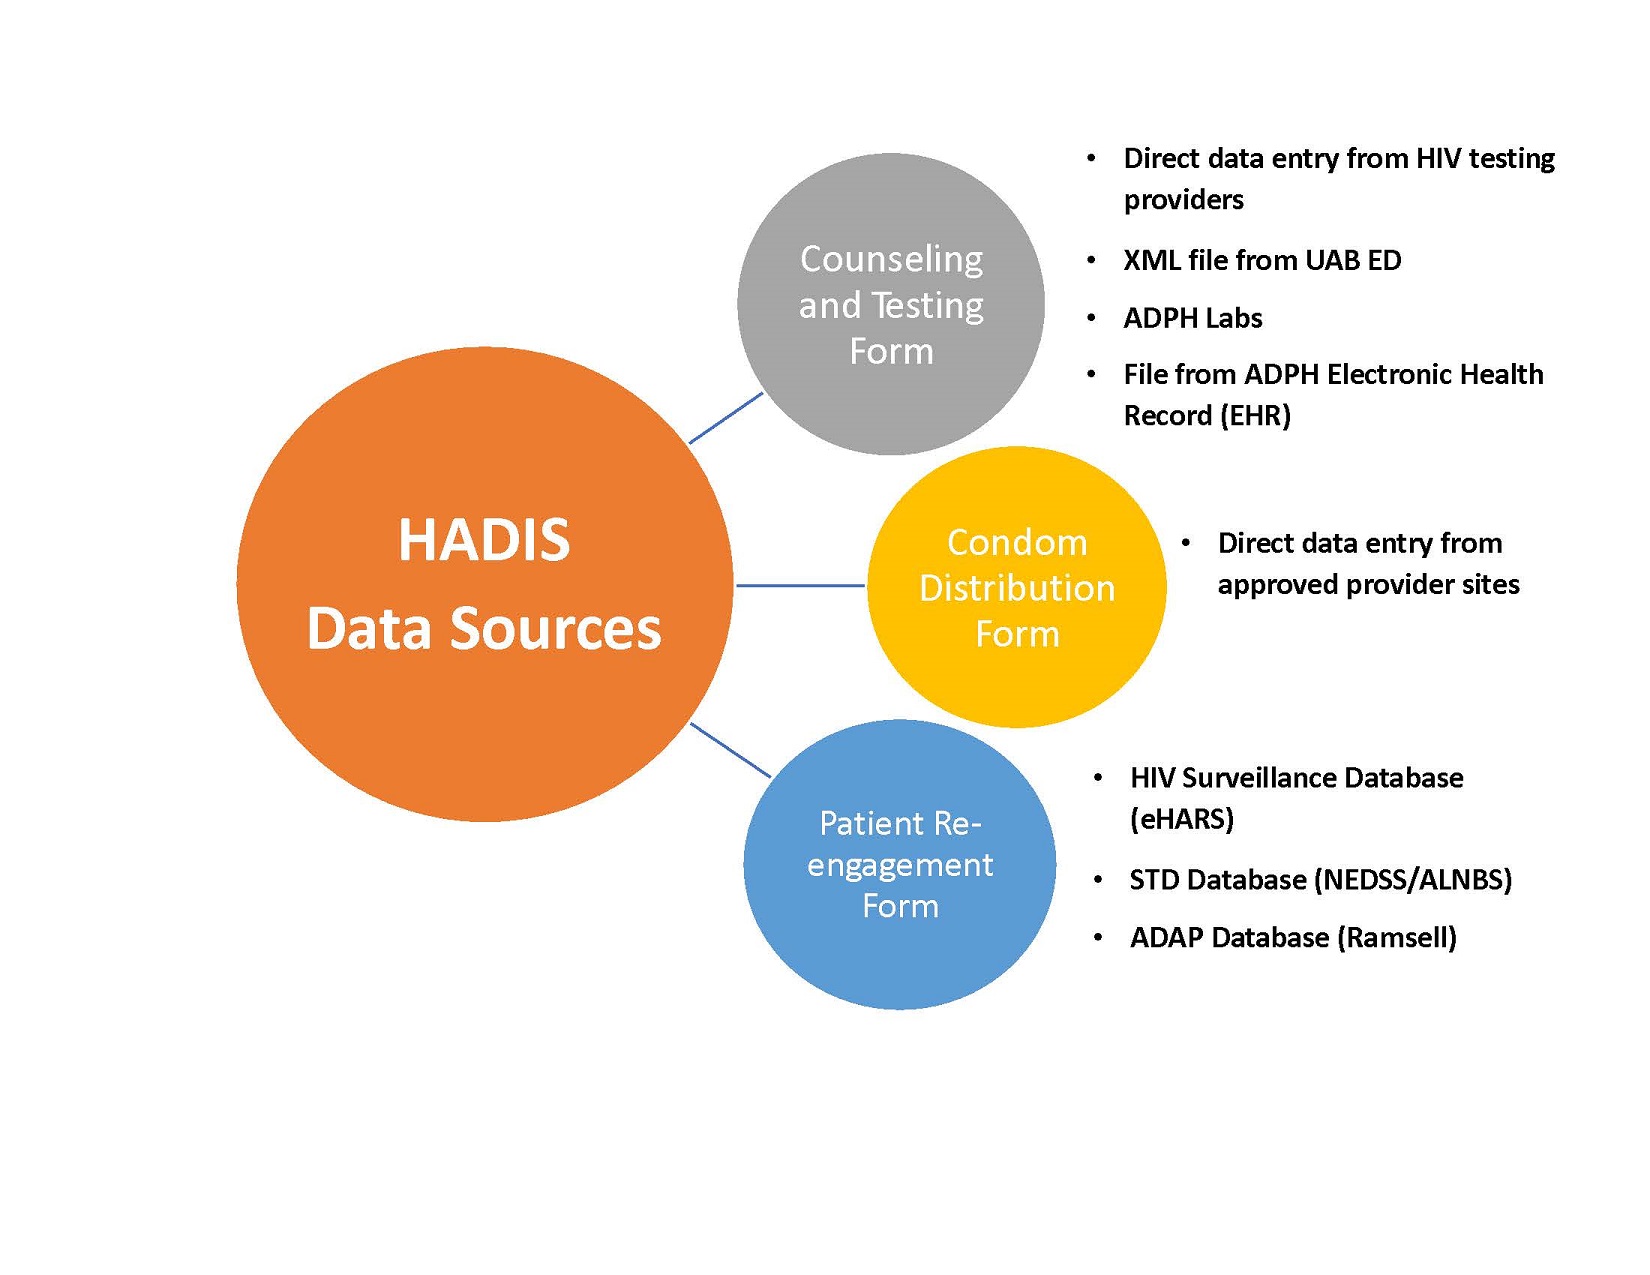 HADIS Data Source